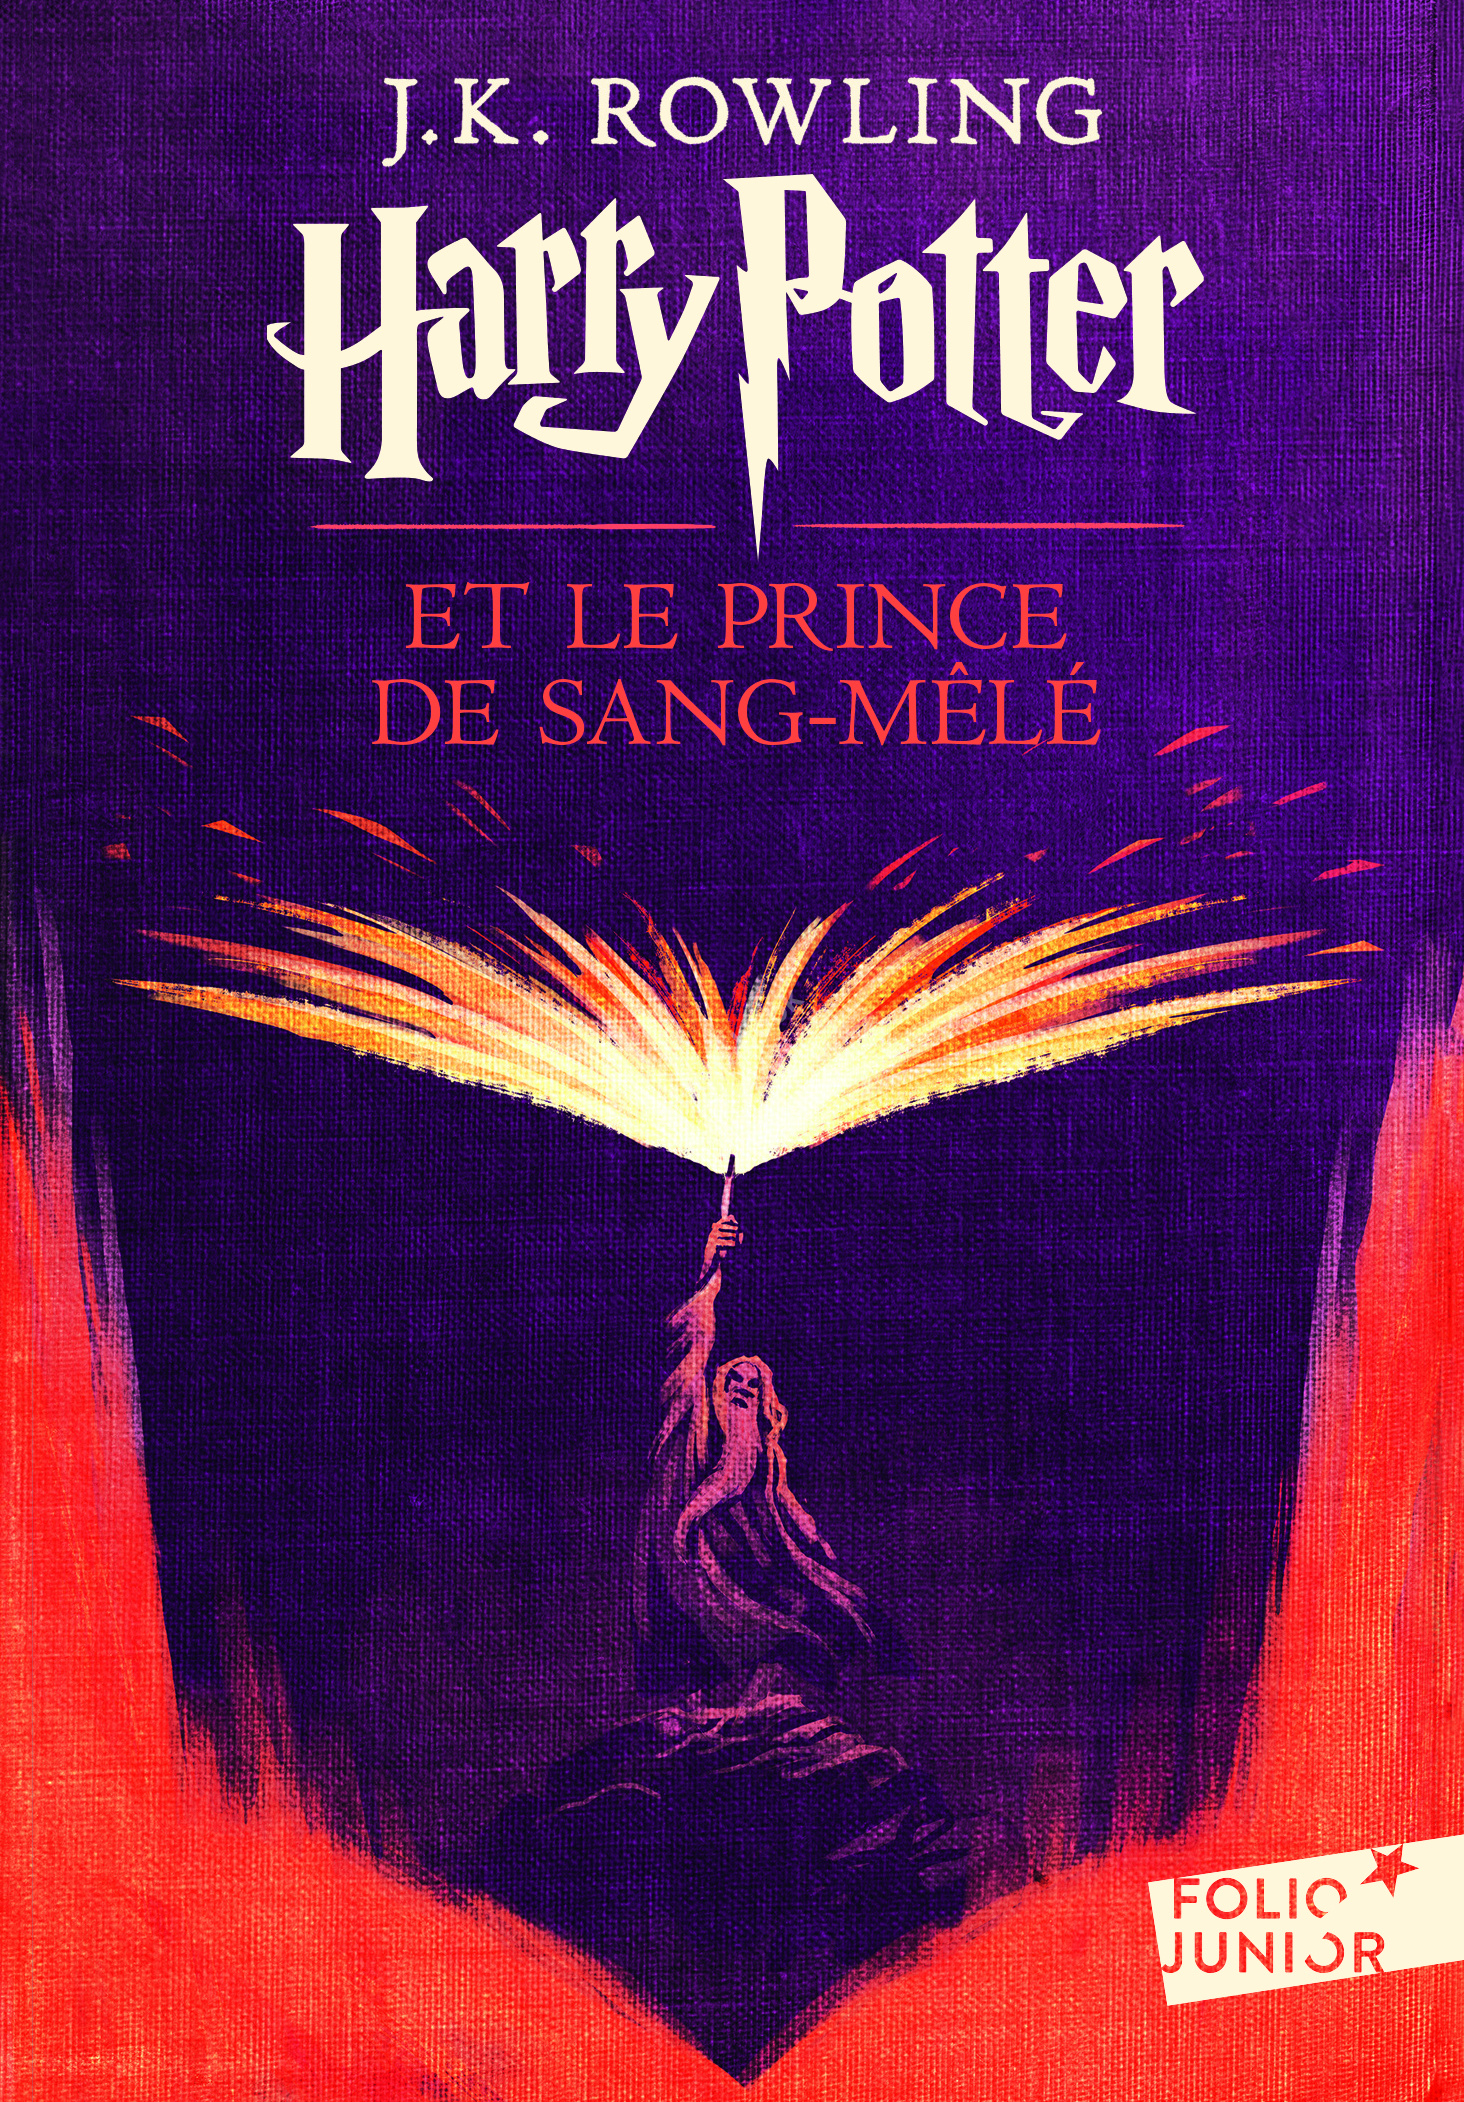 Rowling, J. K. Harry Potter et le Prince de Sang-Mele NEd 